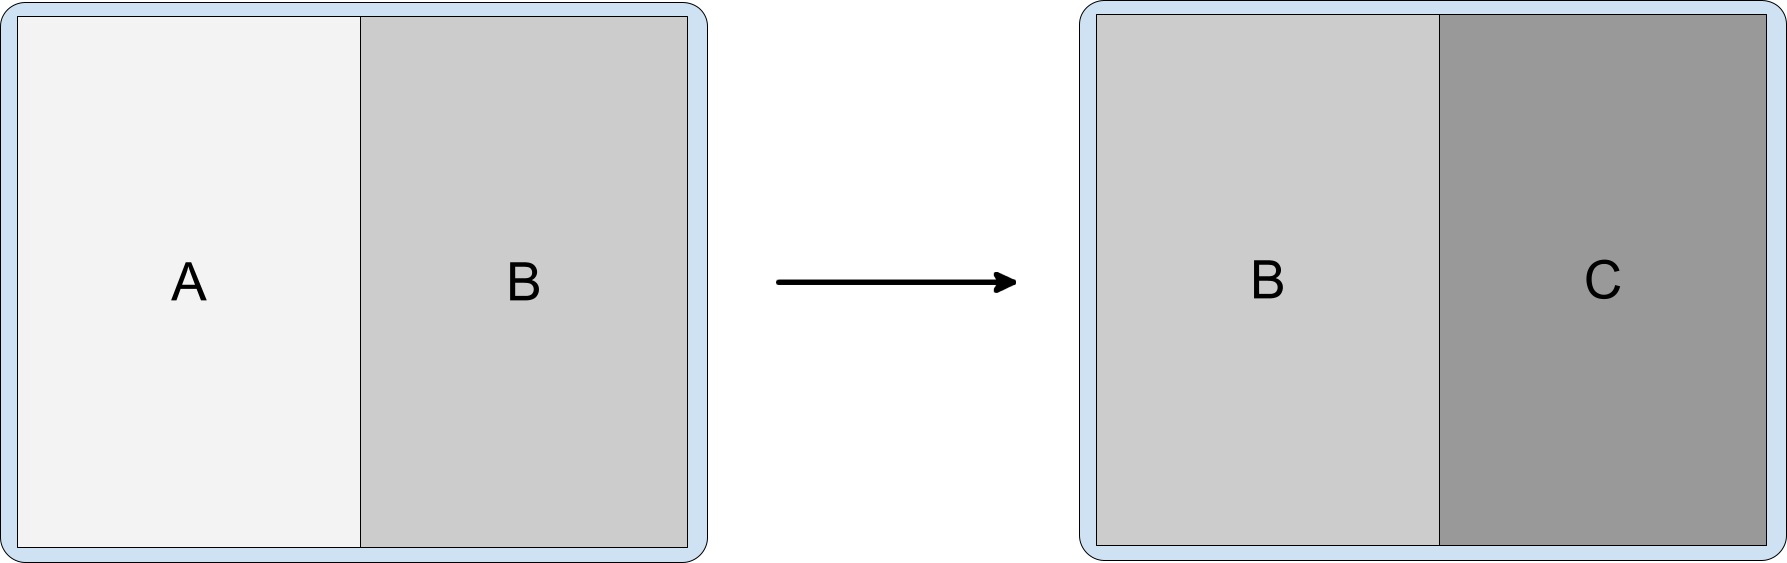 Cửa sổ tác vụ cho thấy các hoạt động A và B, sau đó là các hoạt động B và C.